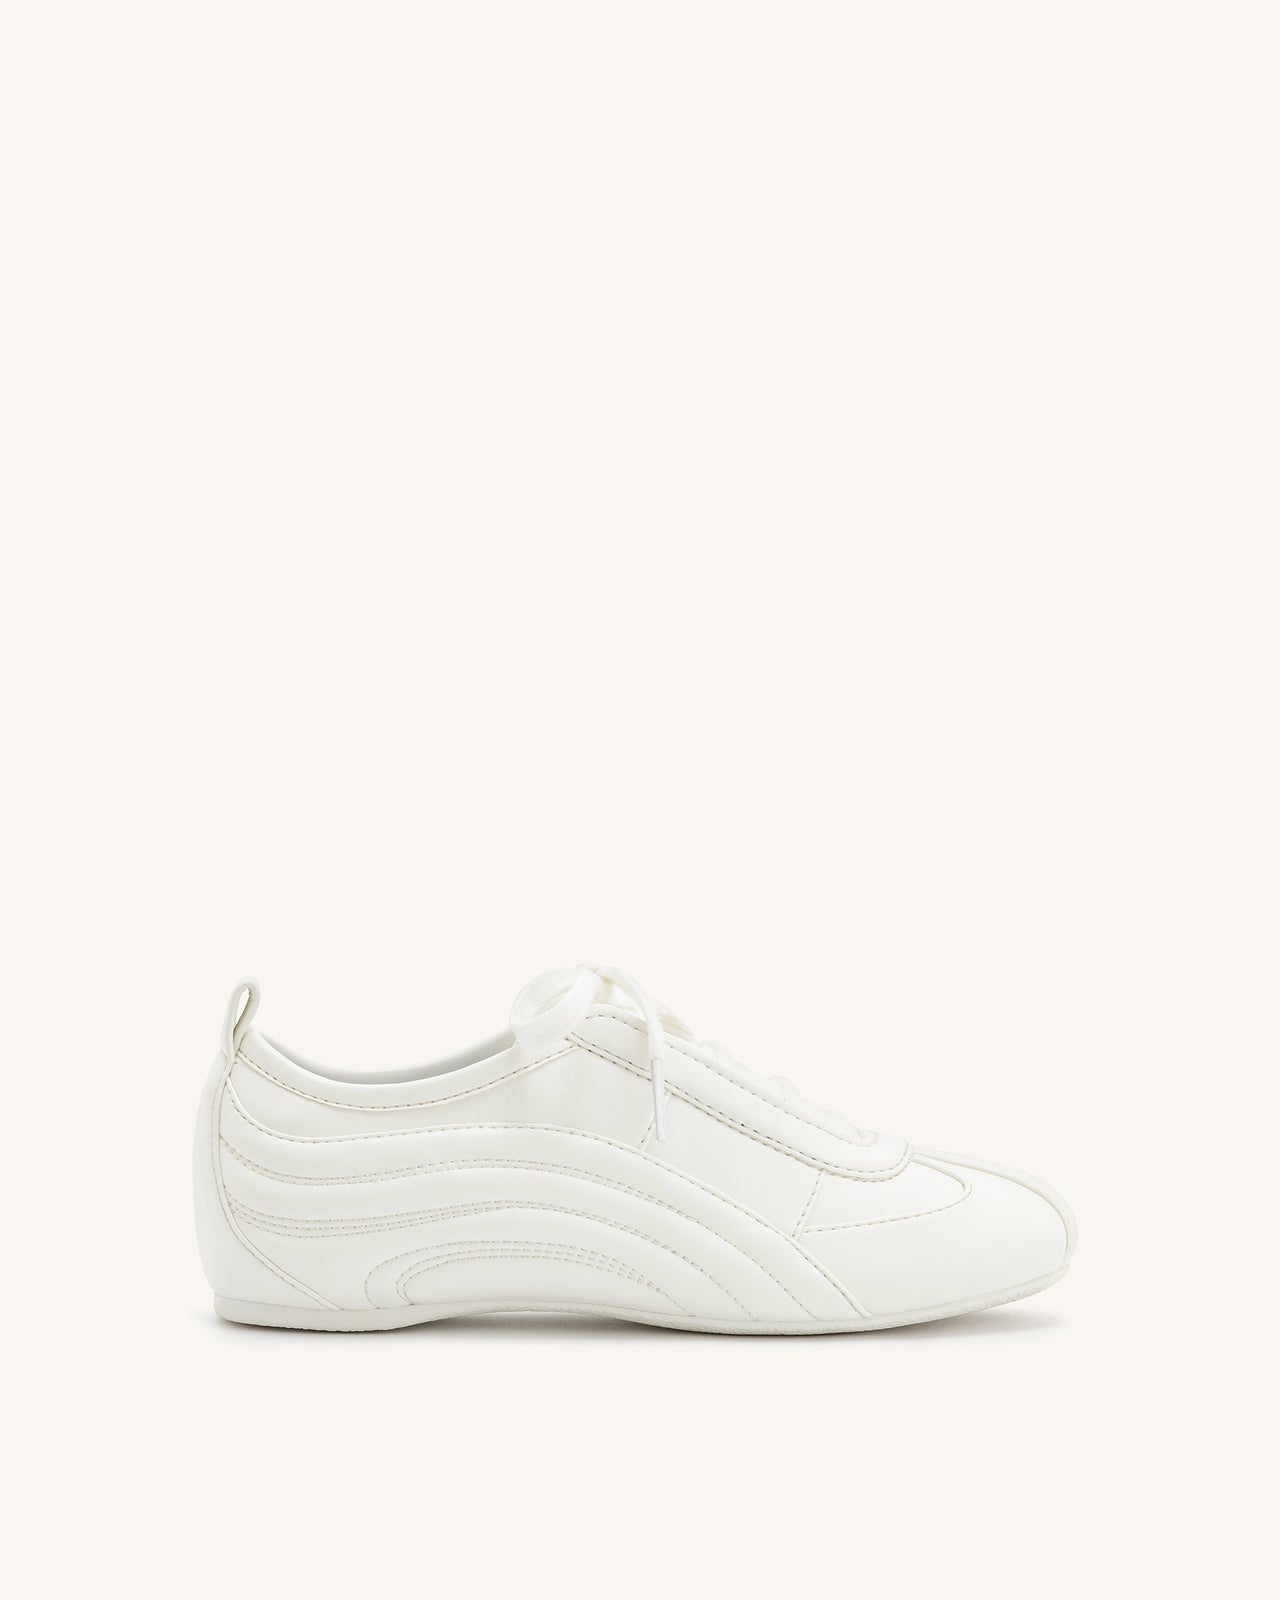 Ferne 流線型光澤運動鞋 - 白色